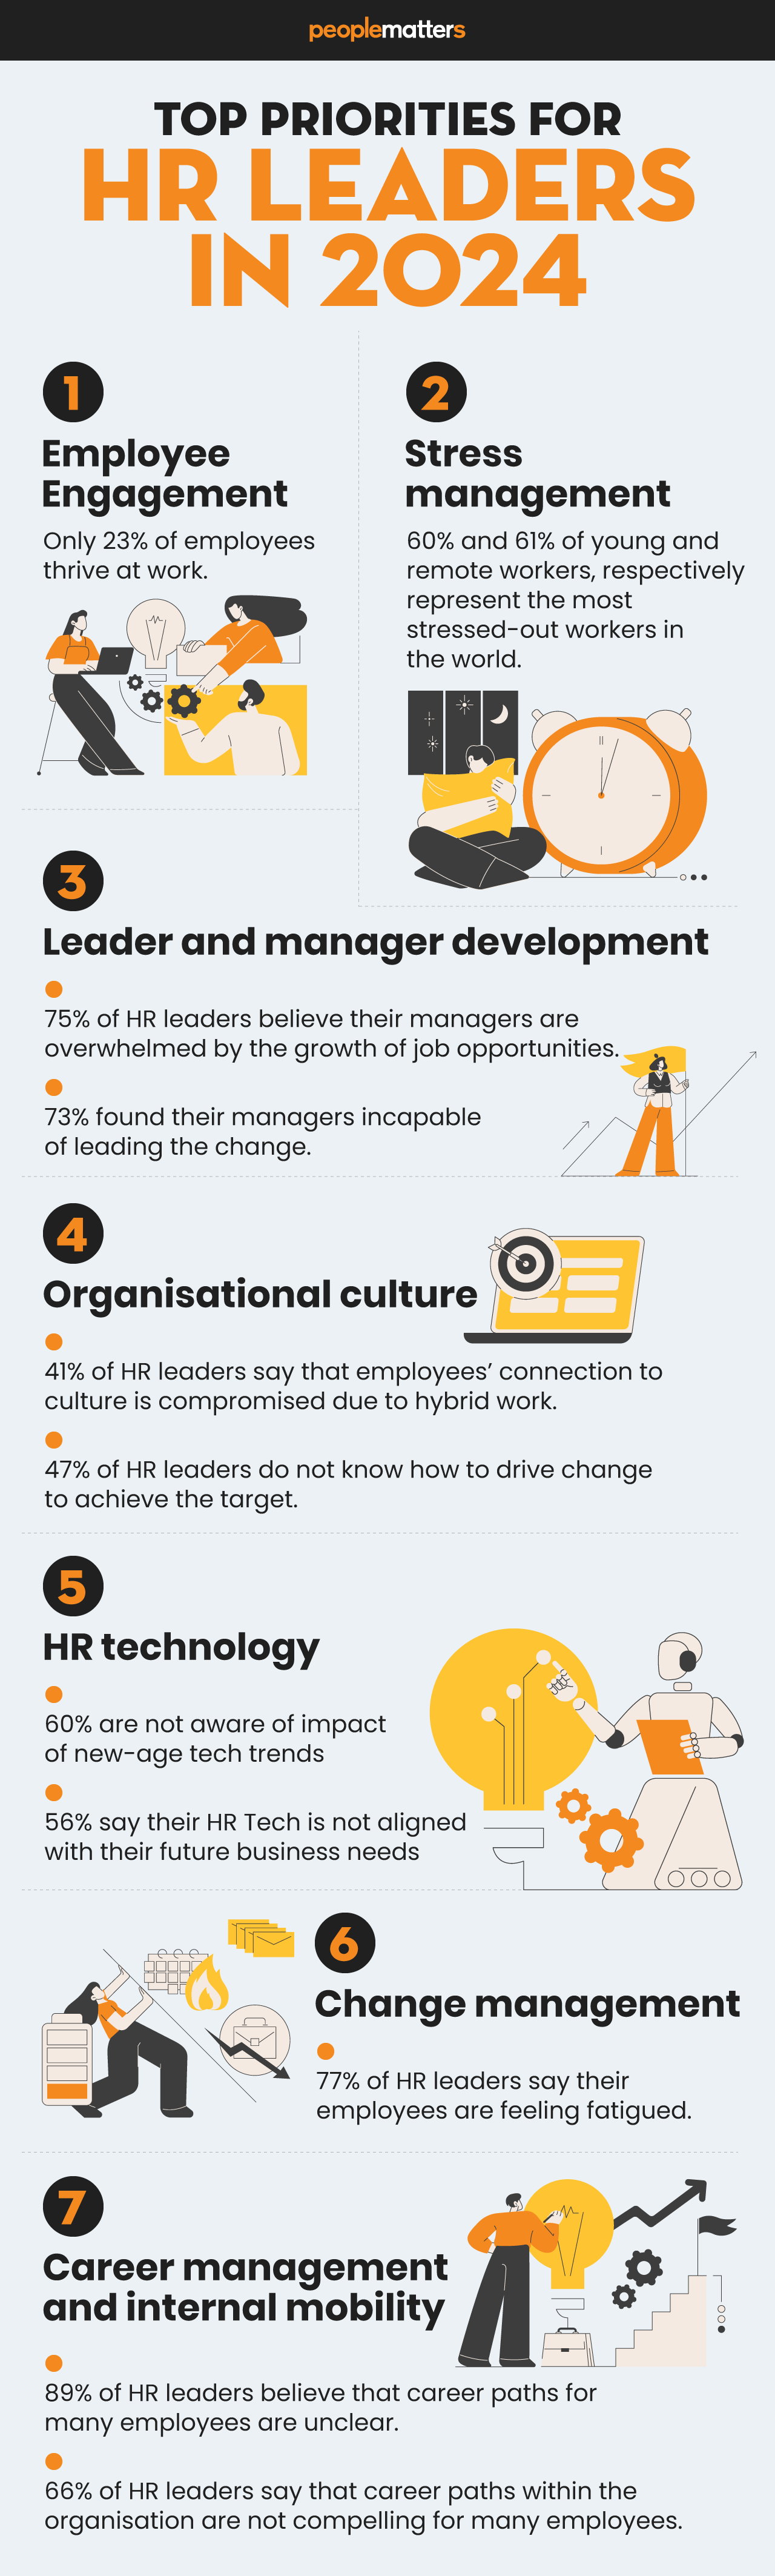 Article Top priorities for HR leaders in 2024